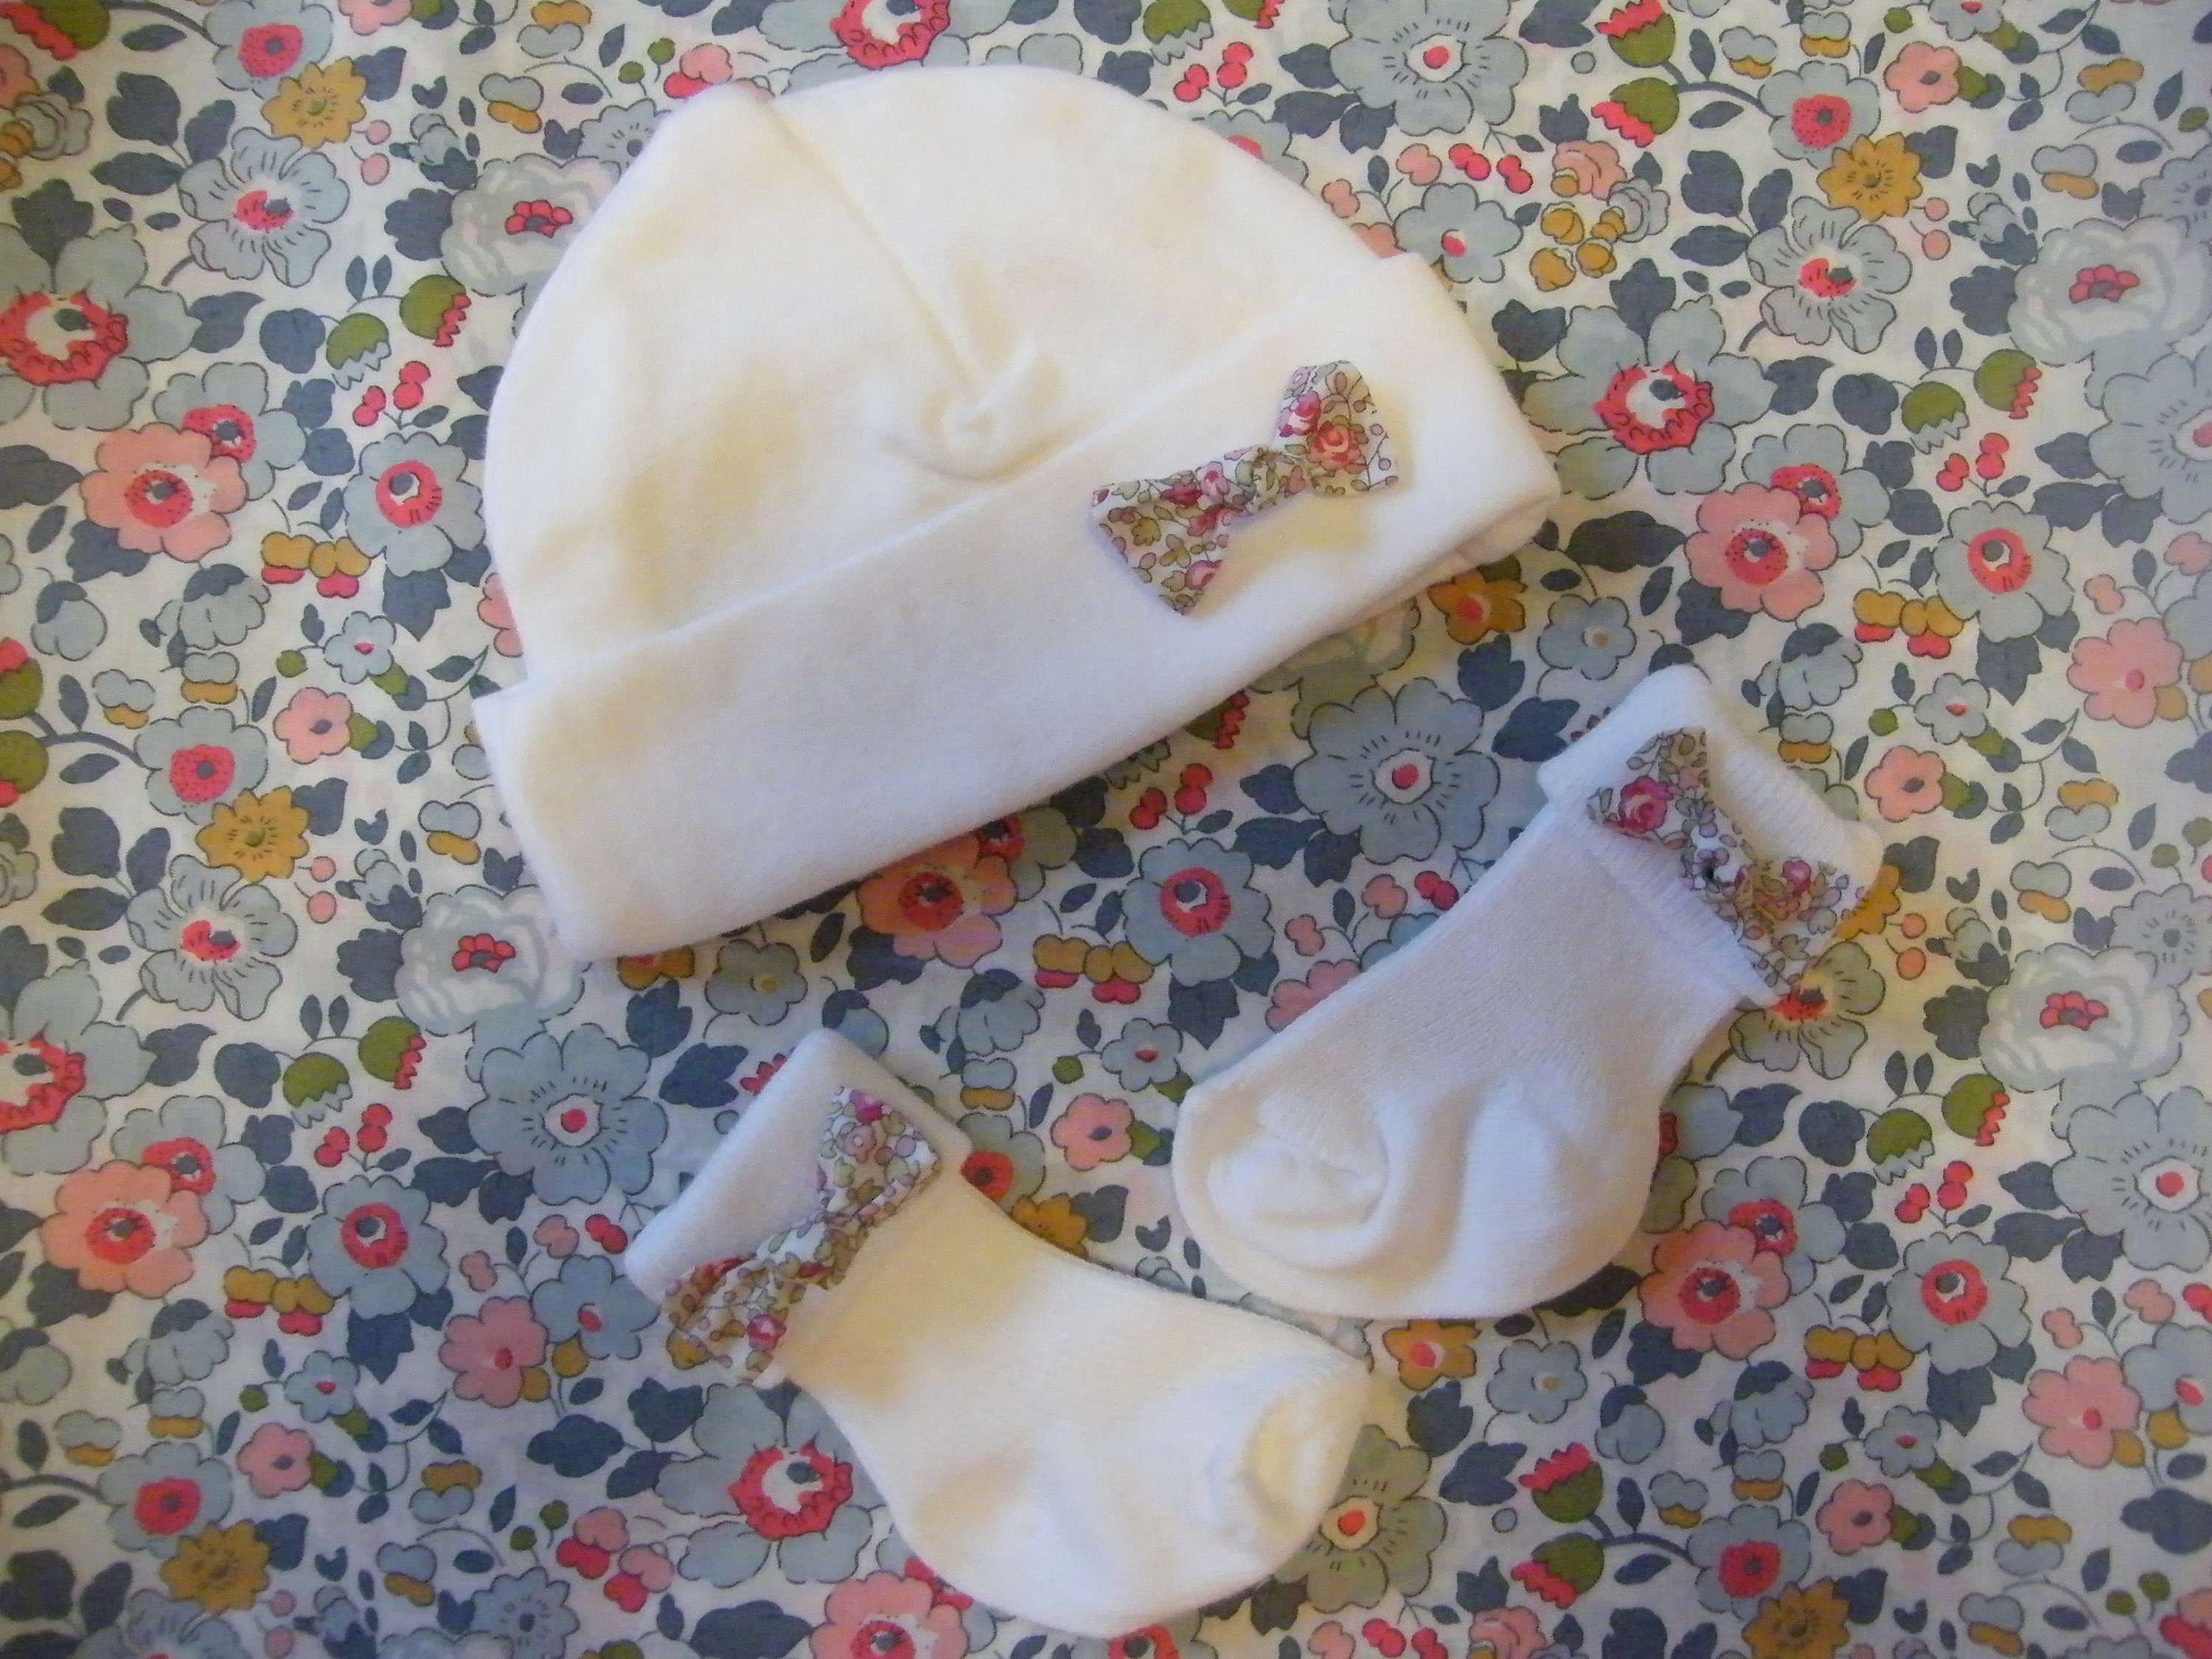 Chaussettes bébé de baptême ou cérémonie en coton blanc avec volant en voile